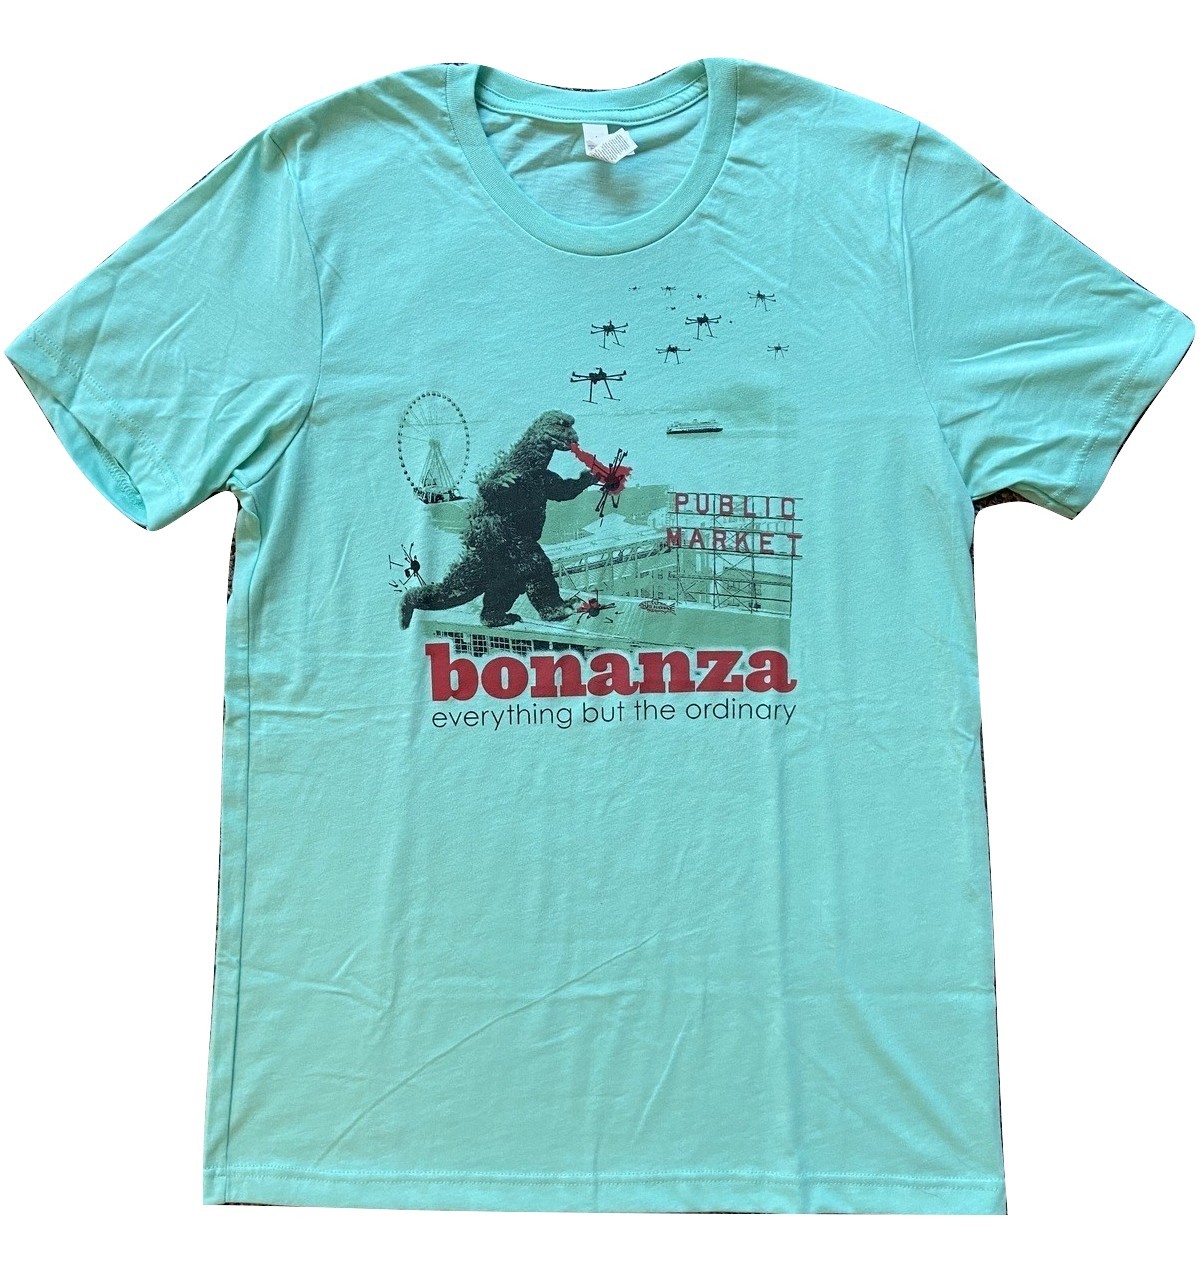 Primary image for Bonanza "Bonzilla Drone Attack" T-Shirt, Blue-Green